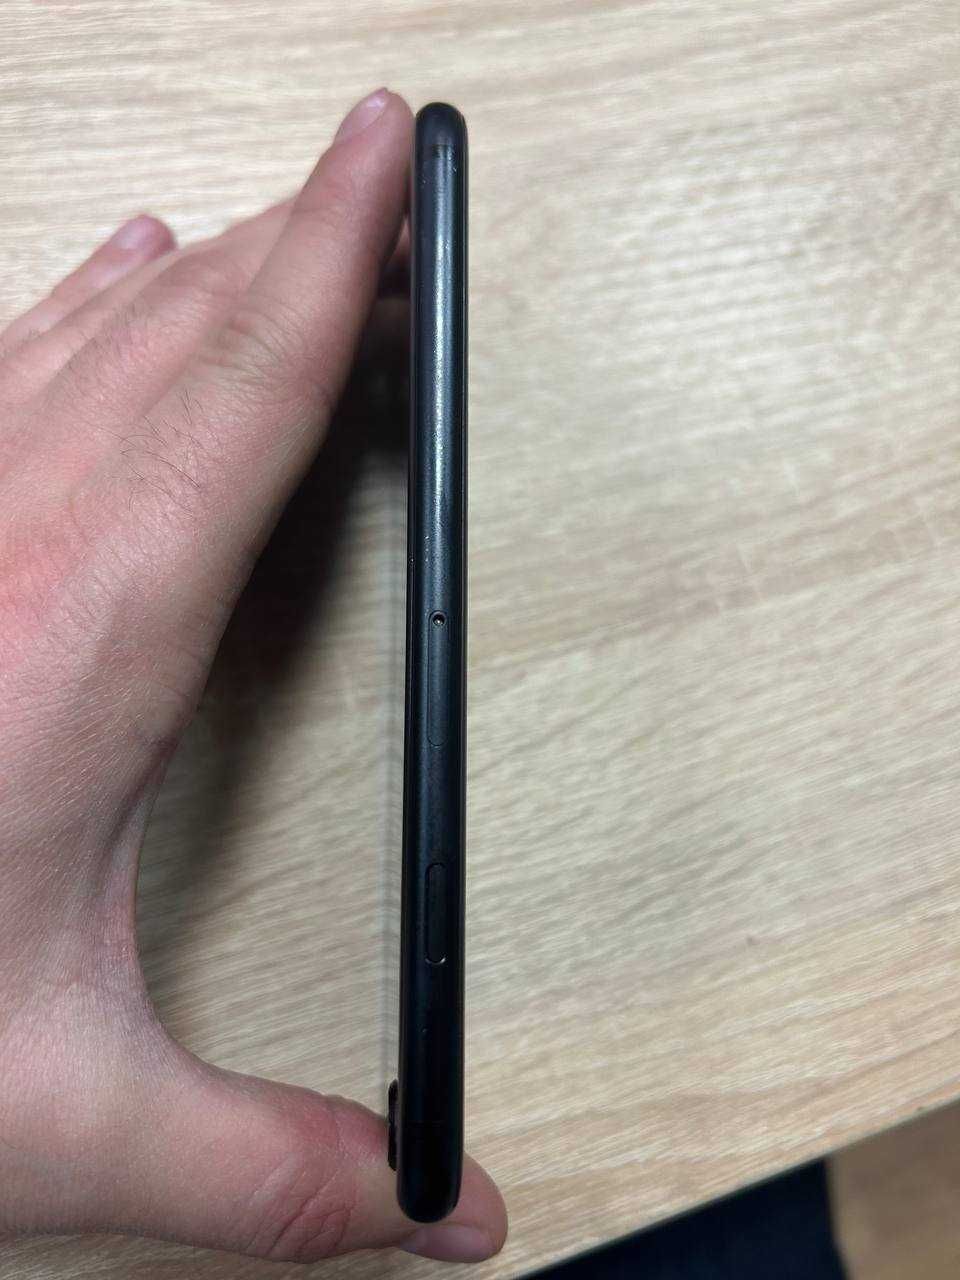 iPhone SE 2020 64gb Black